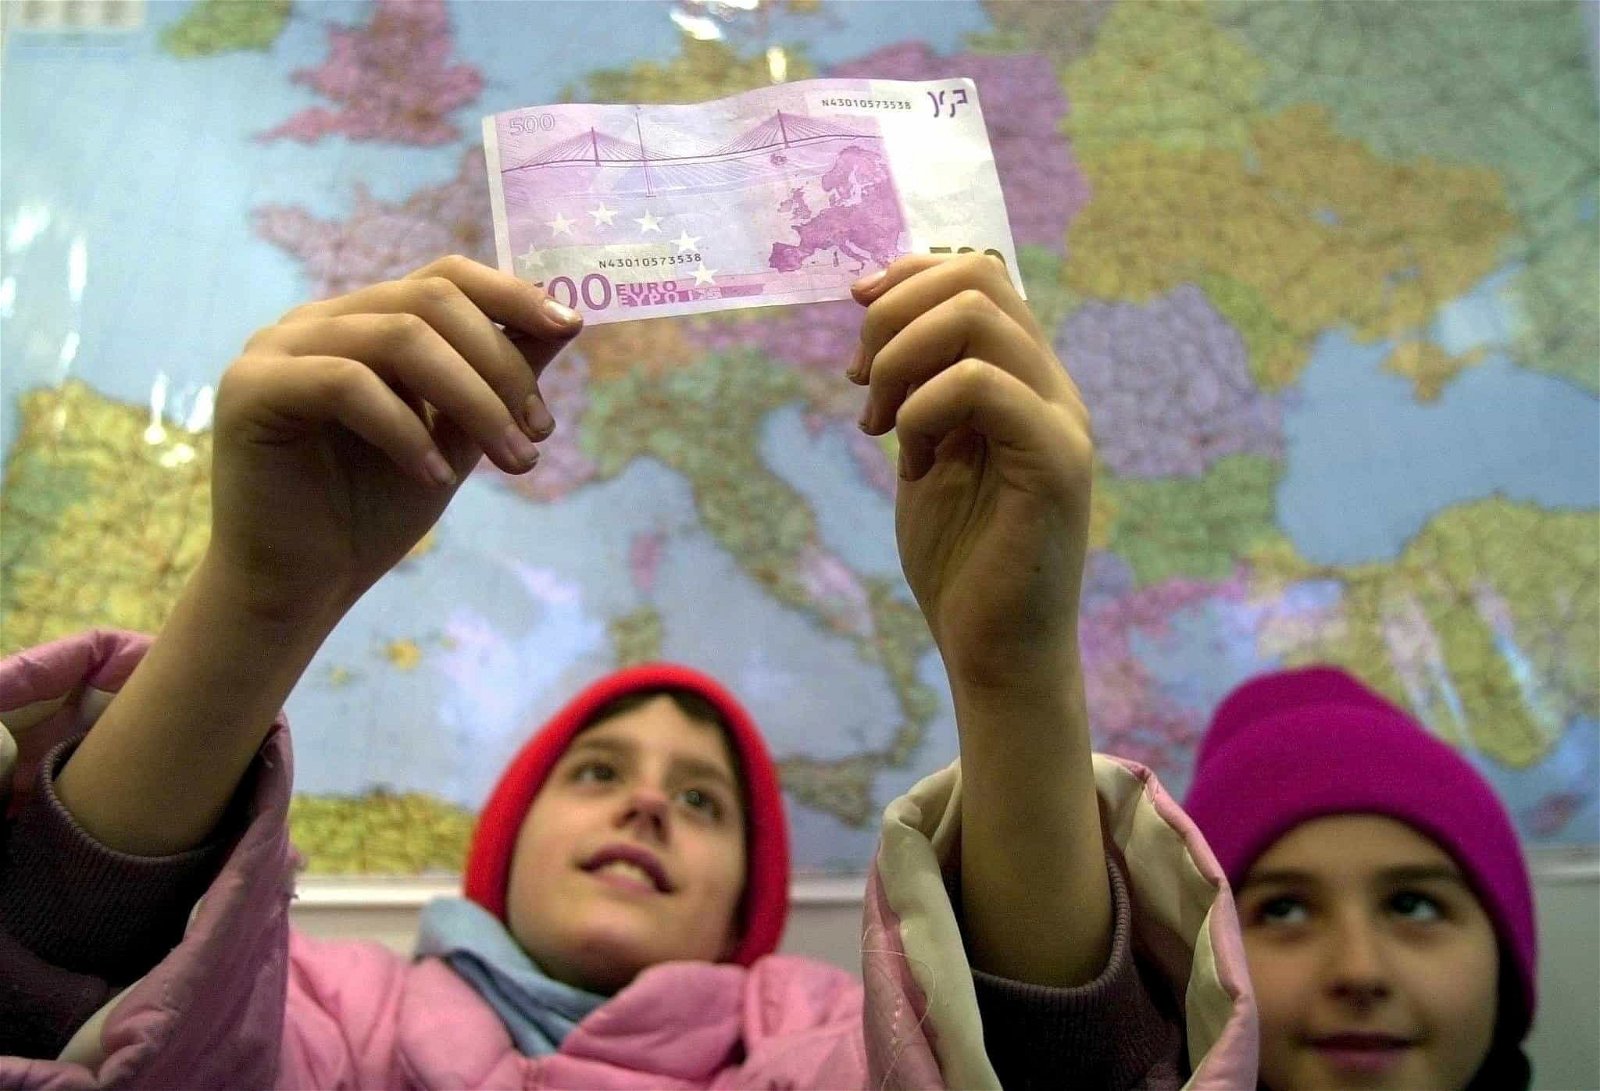 Twee kinderen houden een briefje van 500 euro in de lucht.